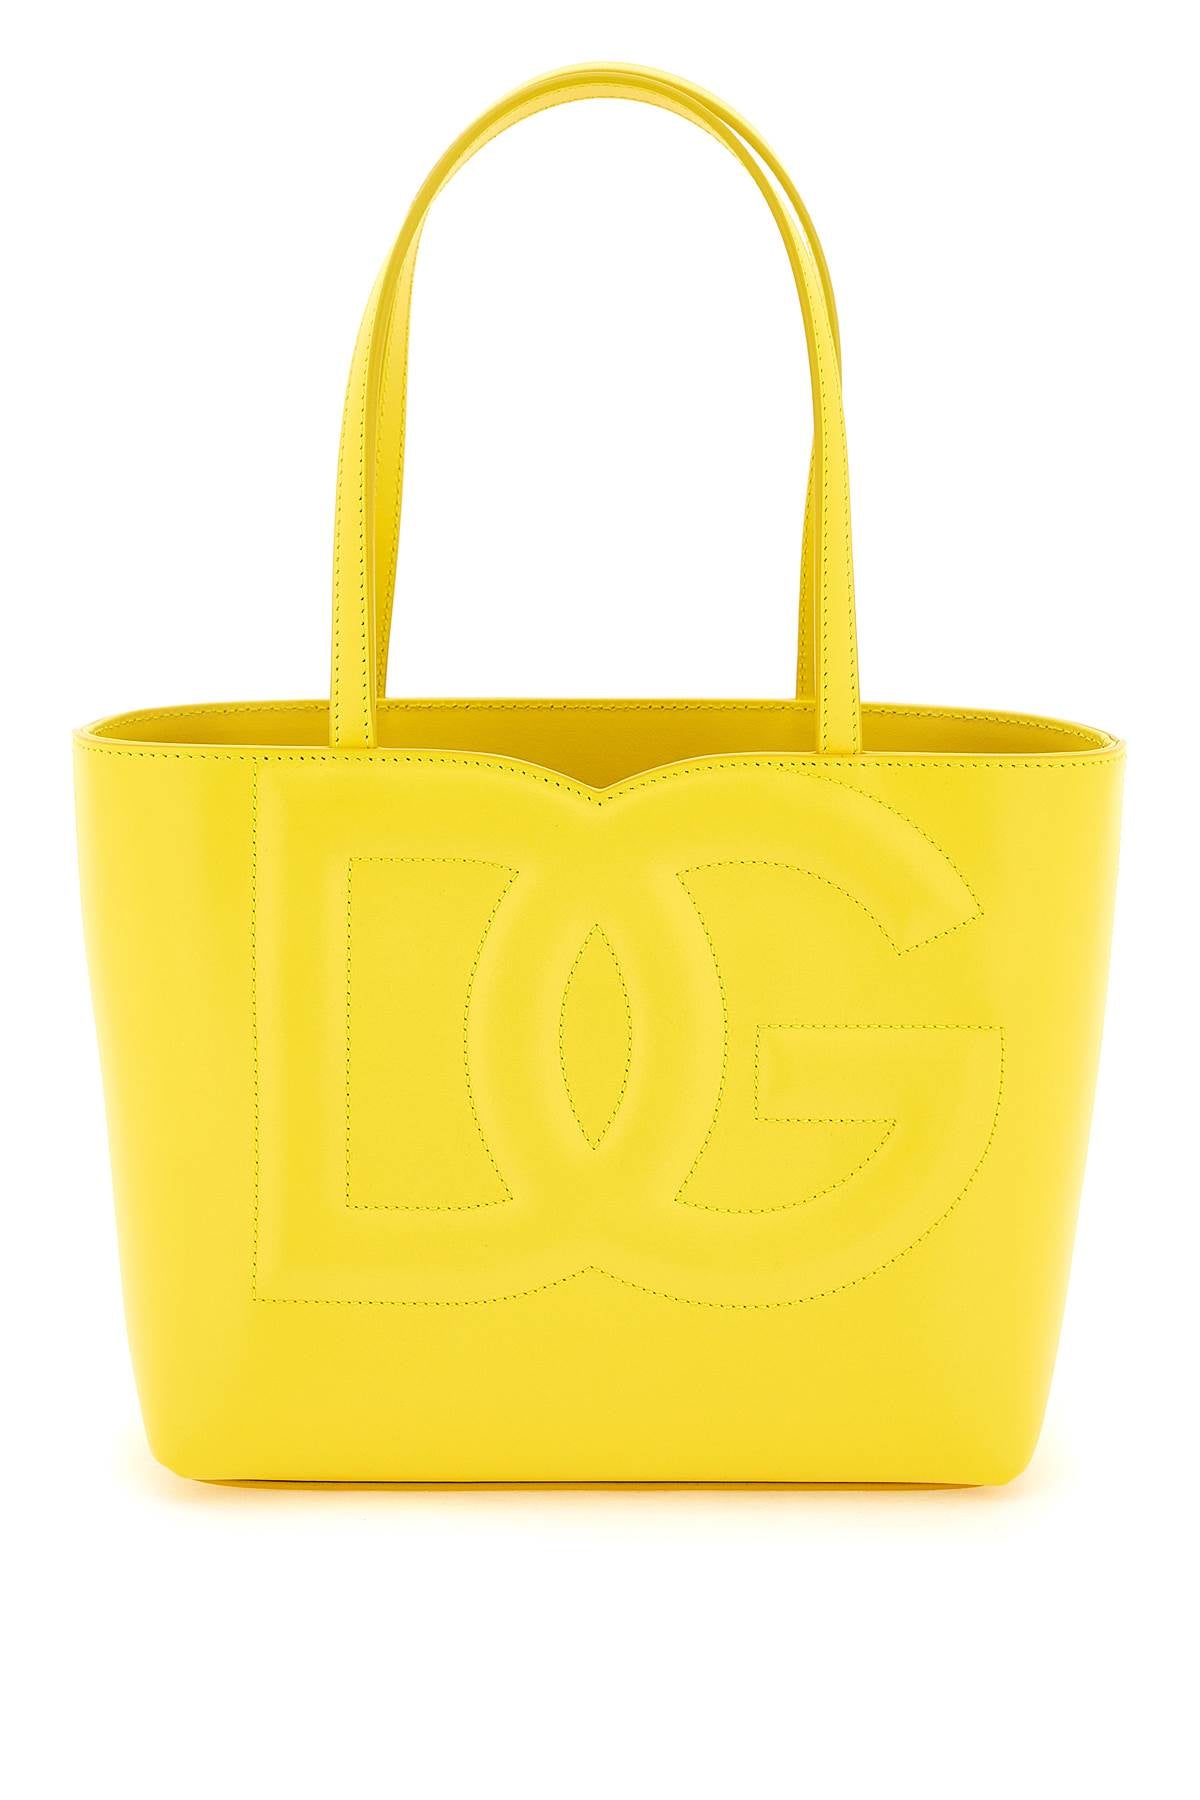 Shop Dolce & Gabbana Women's Yellow Calfskin Shopping Handbag In Tan